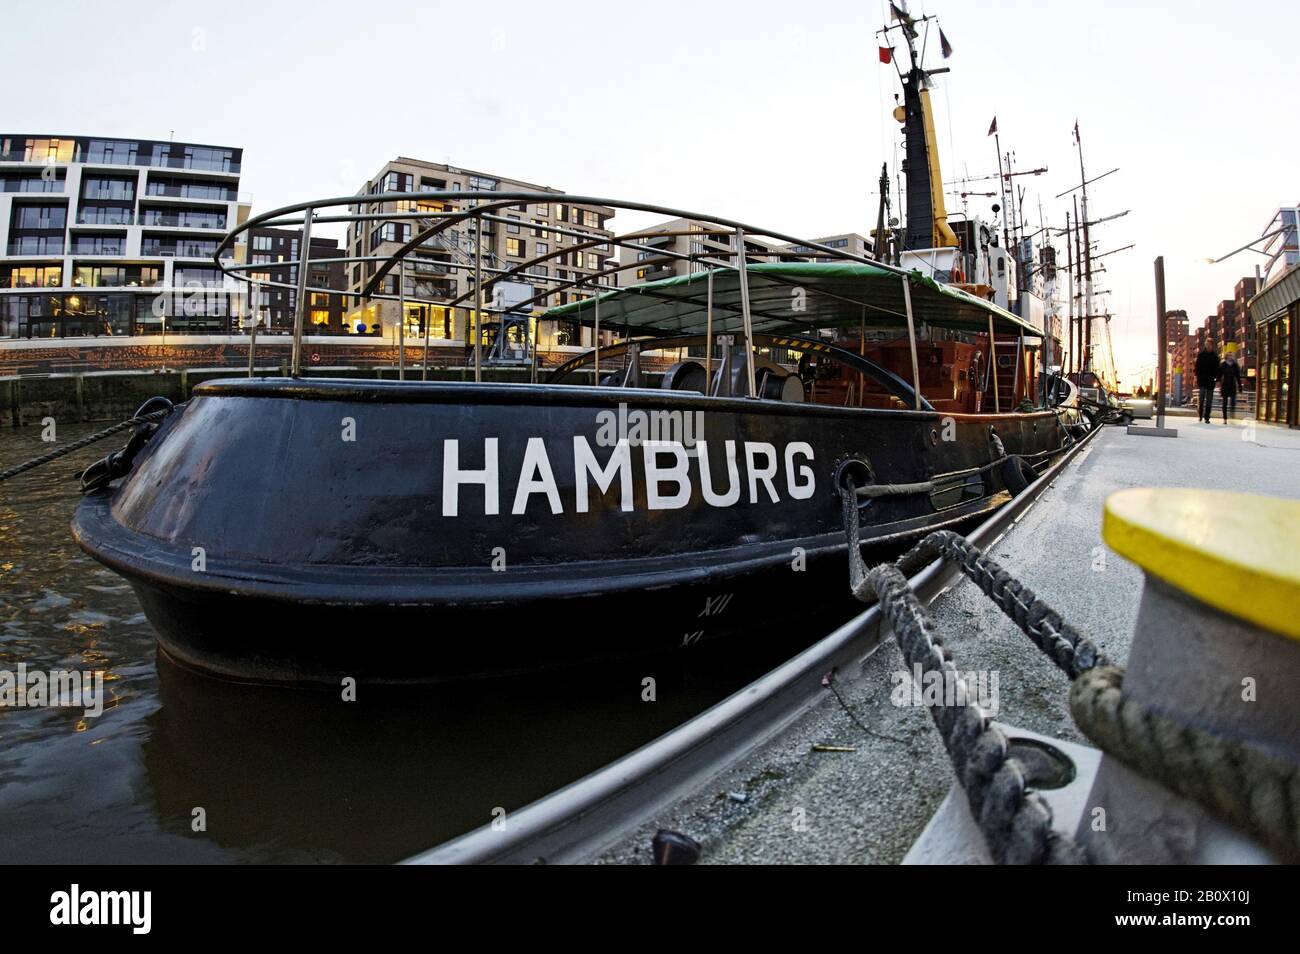 Historisches Schiff mit Schriftzug "HAMBURG", traditioneller Schiffshafen, Hafencity, Hansestadt Hamburg, Deutschland, Stockfoto